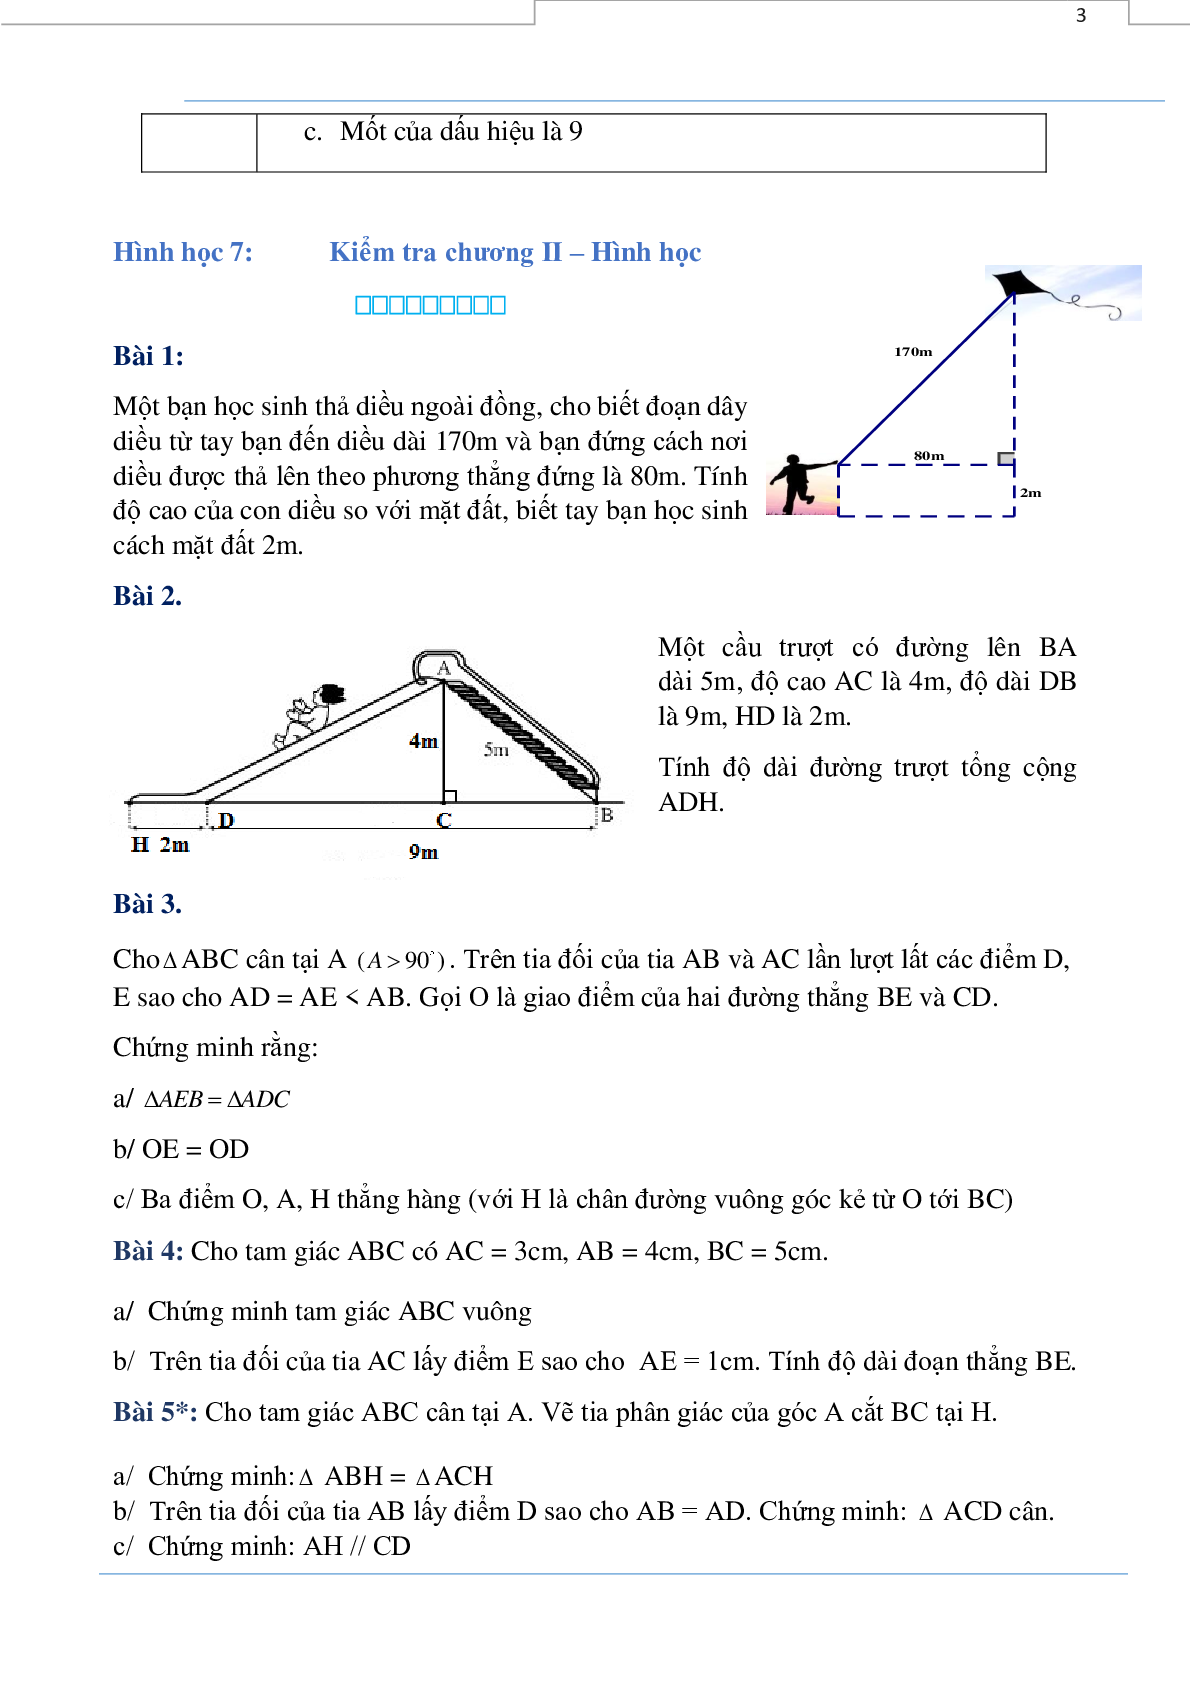 Phiếu bài tập tuần 24 - Toán 7 (trang 3)